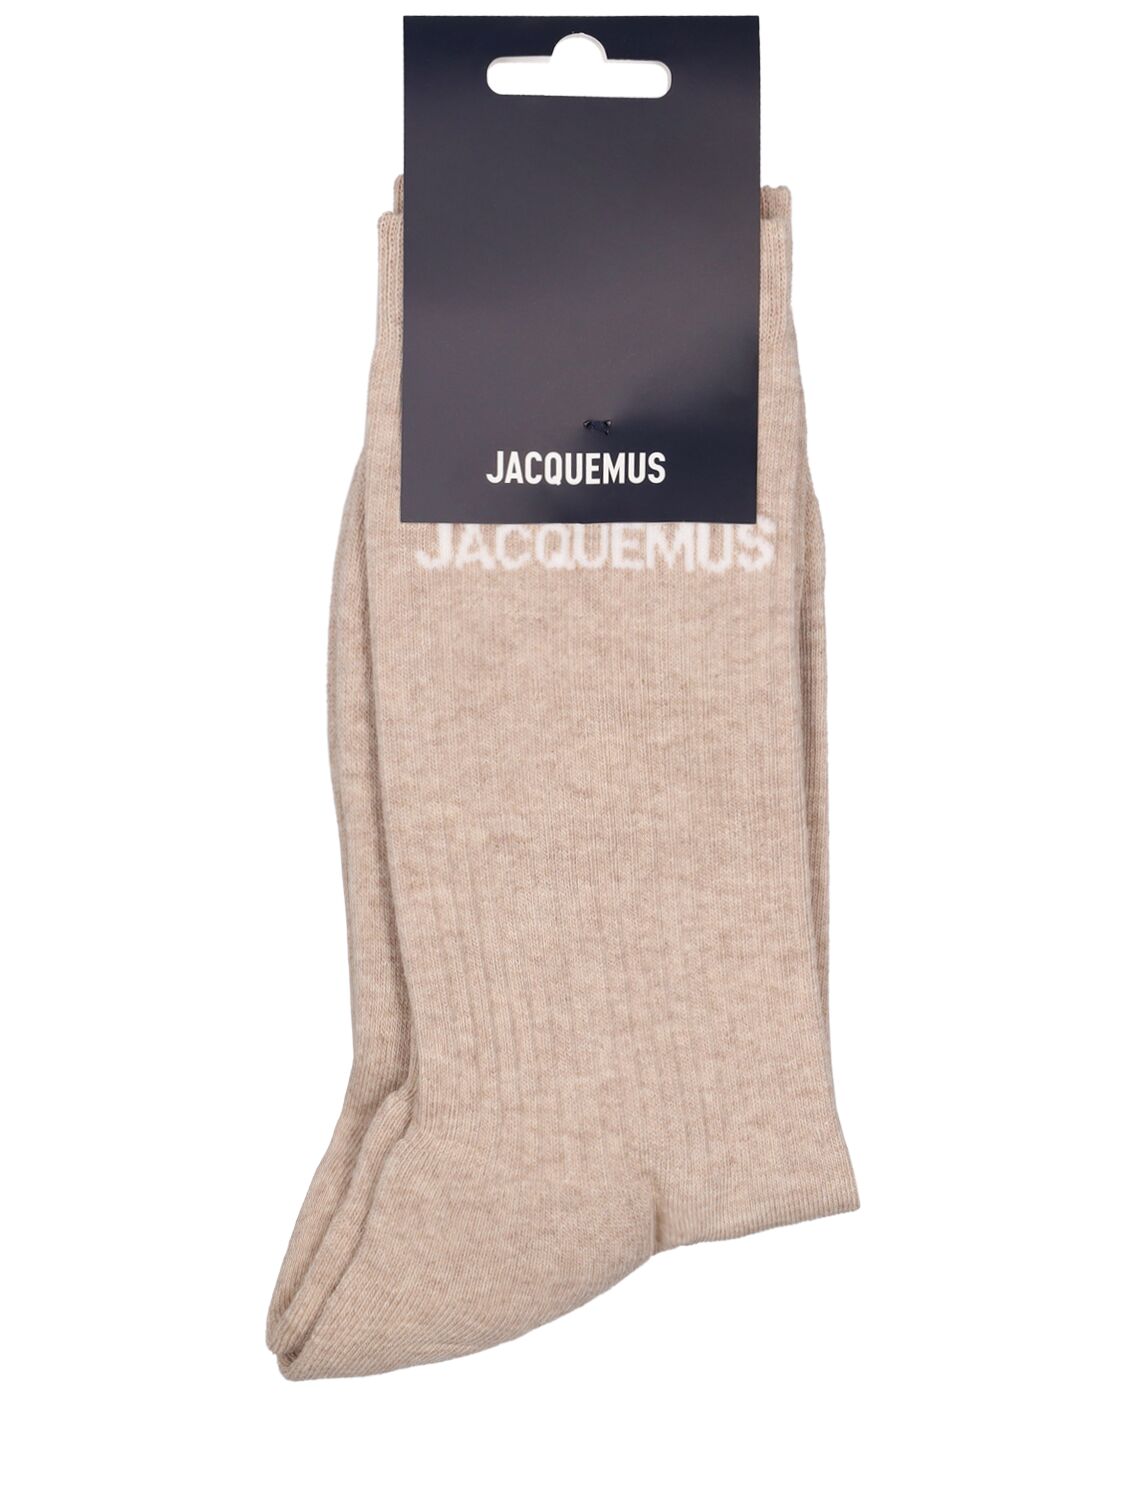 Jacquemus Les Chaussettes Cotton Blend Socks In Light Beige